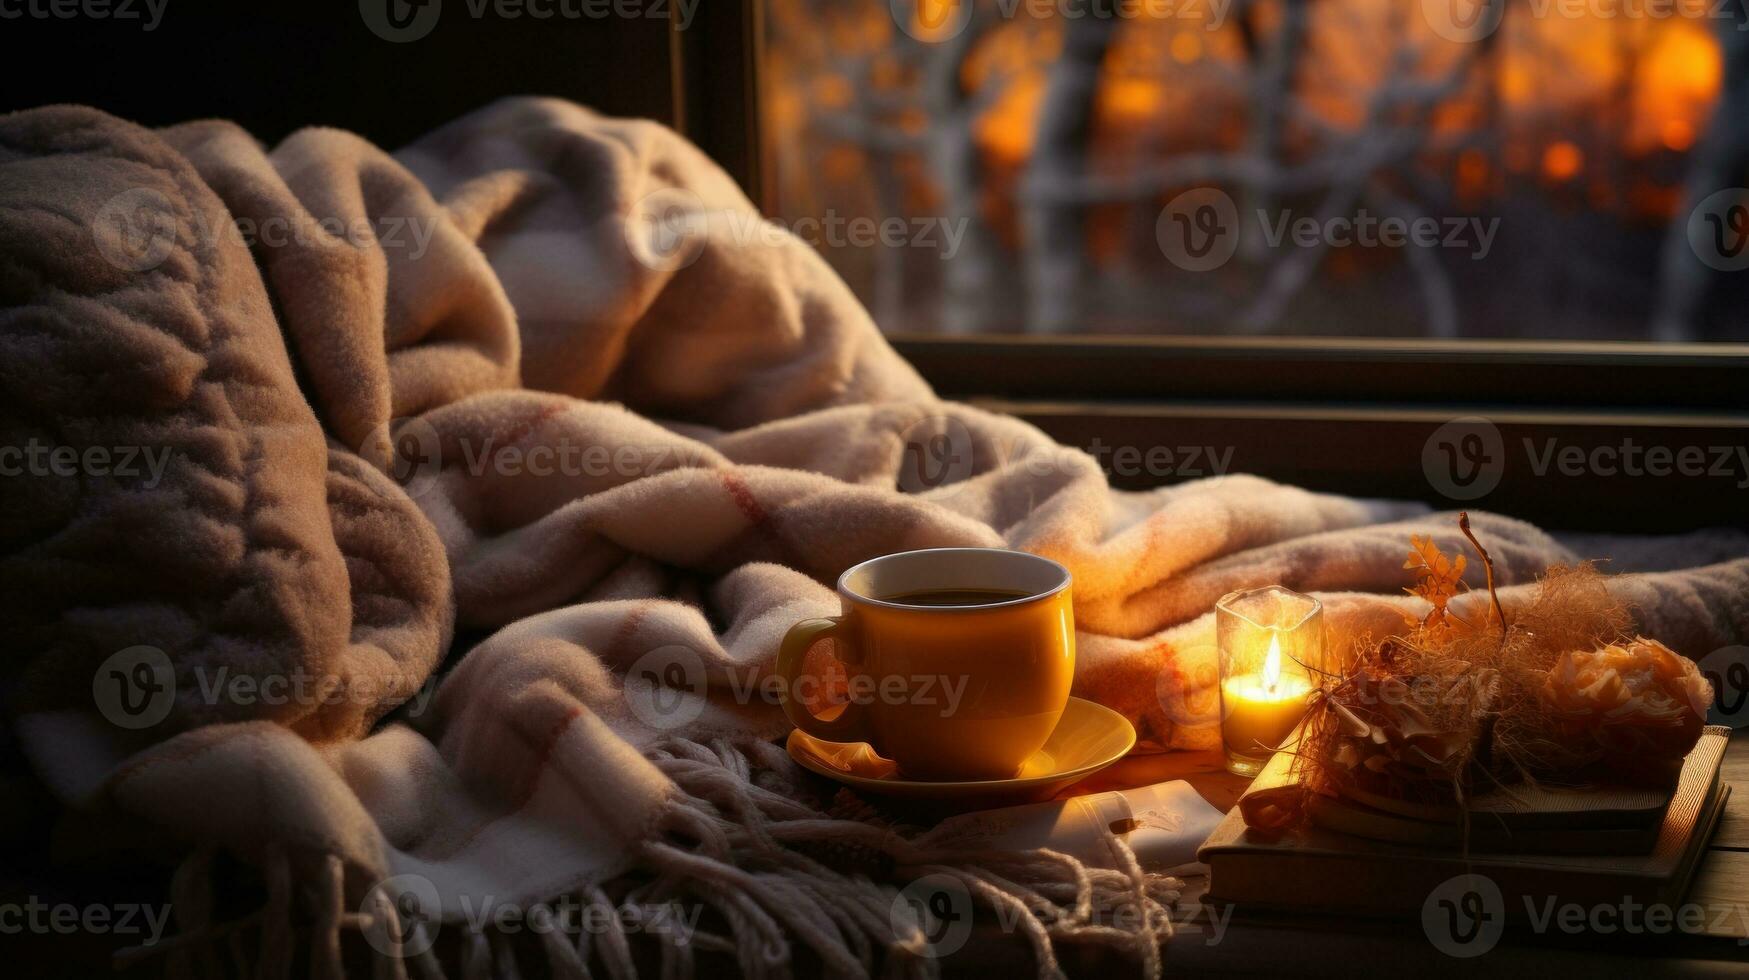 taza de café con libro, cobija y vela en ventana umbral a calentar invierno noche. foto